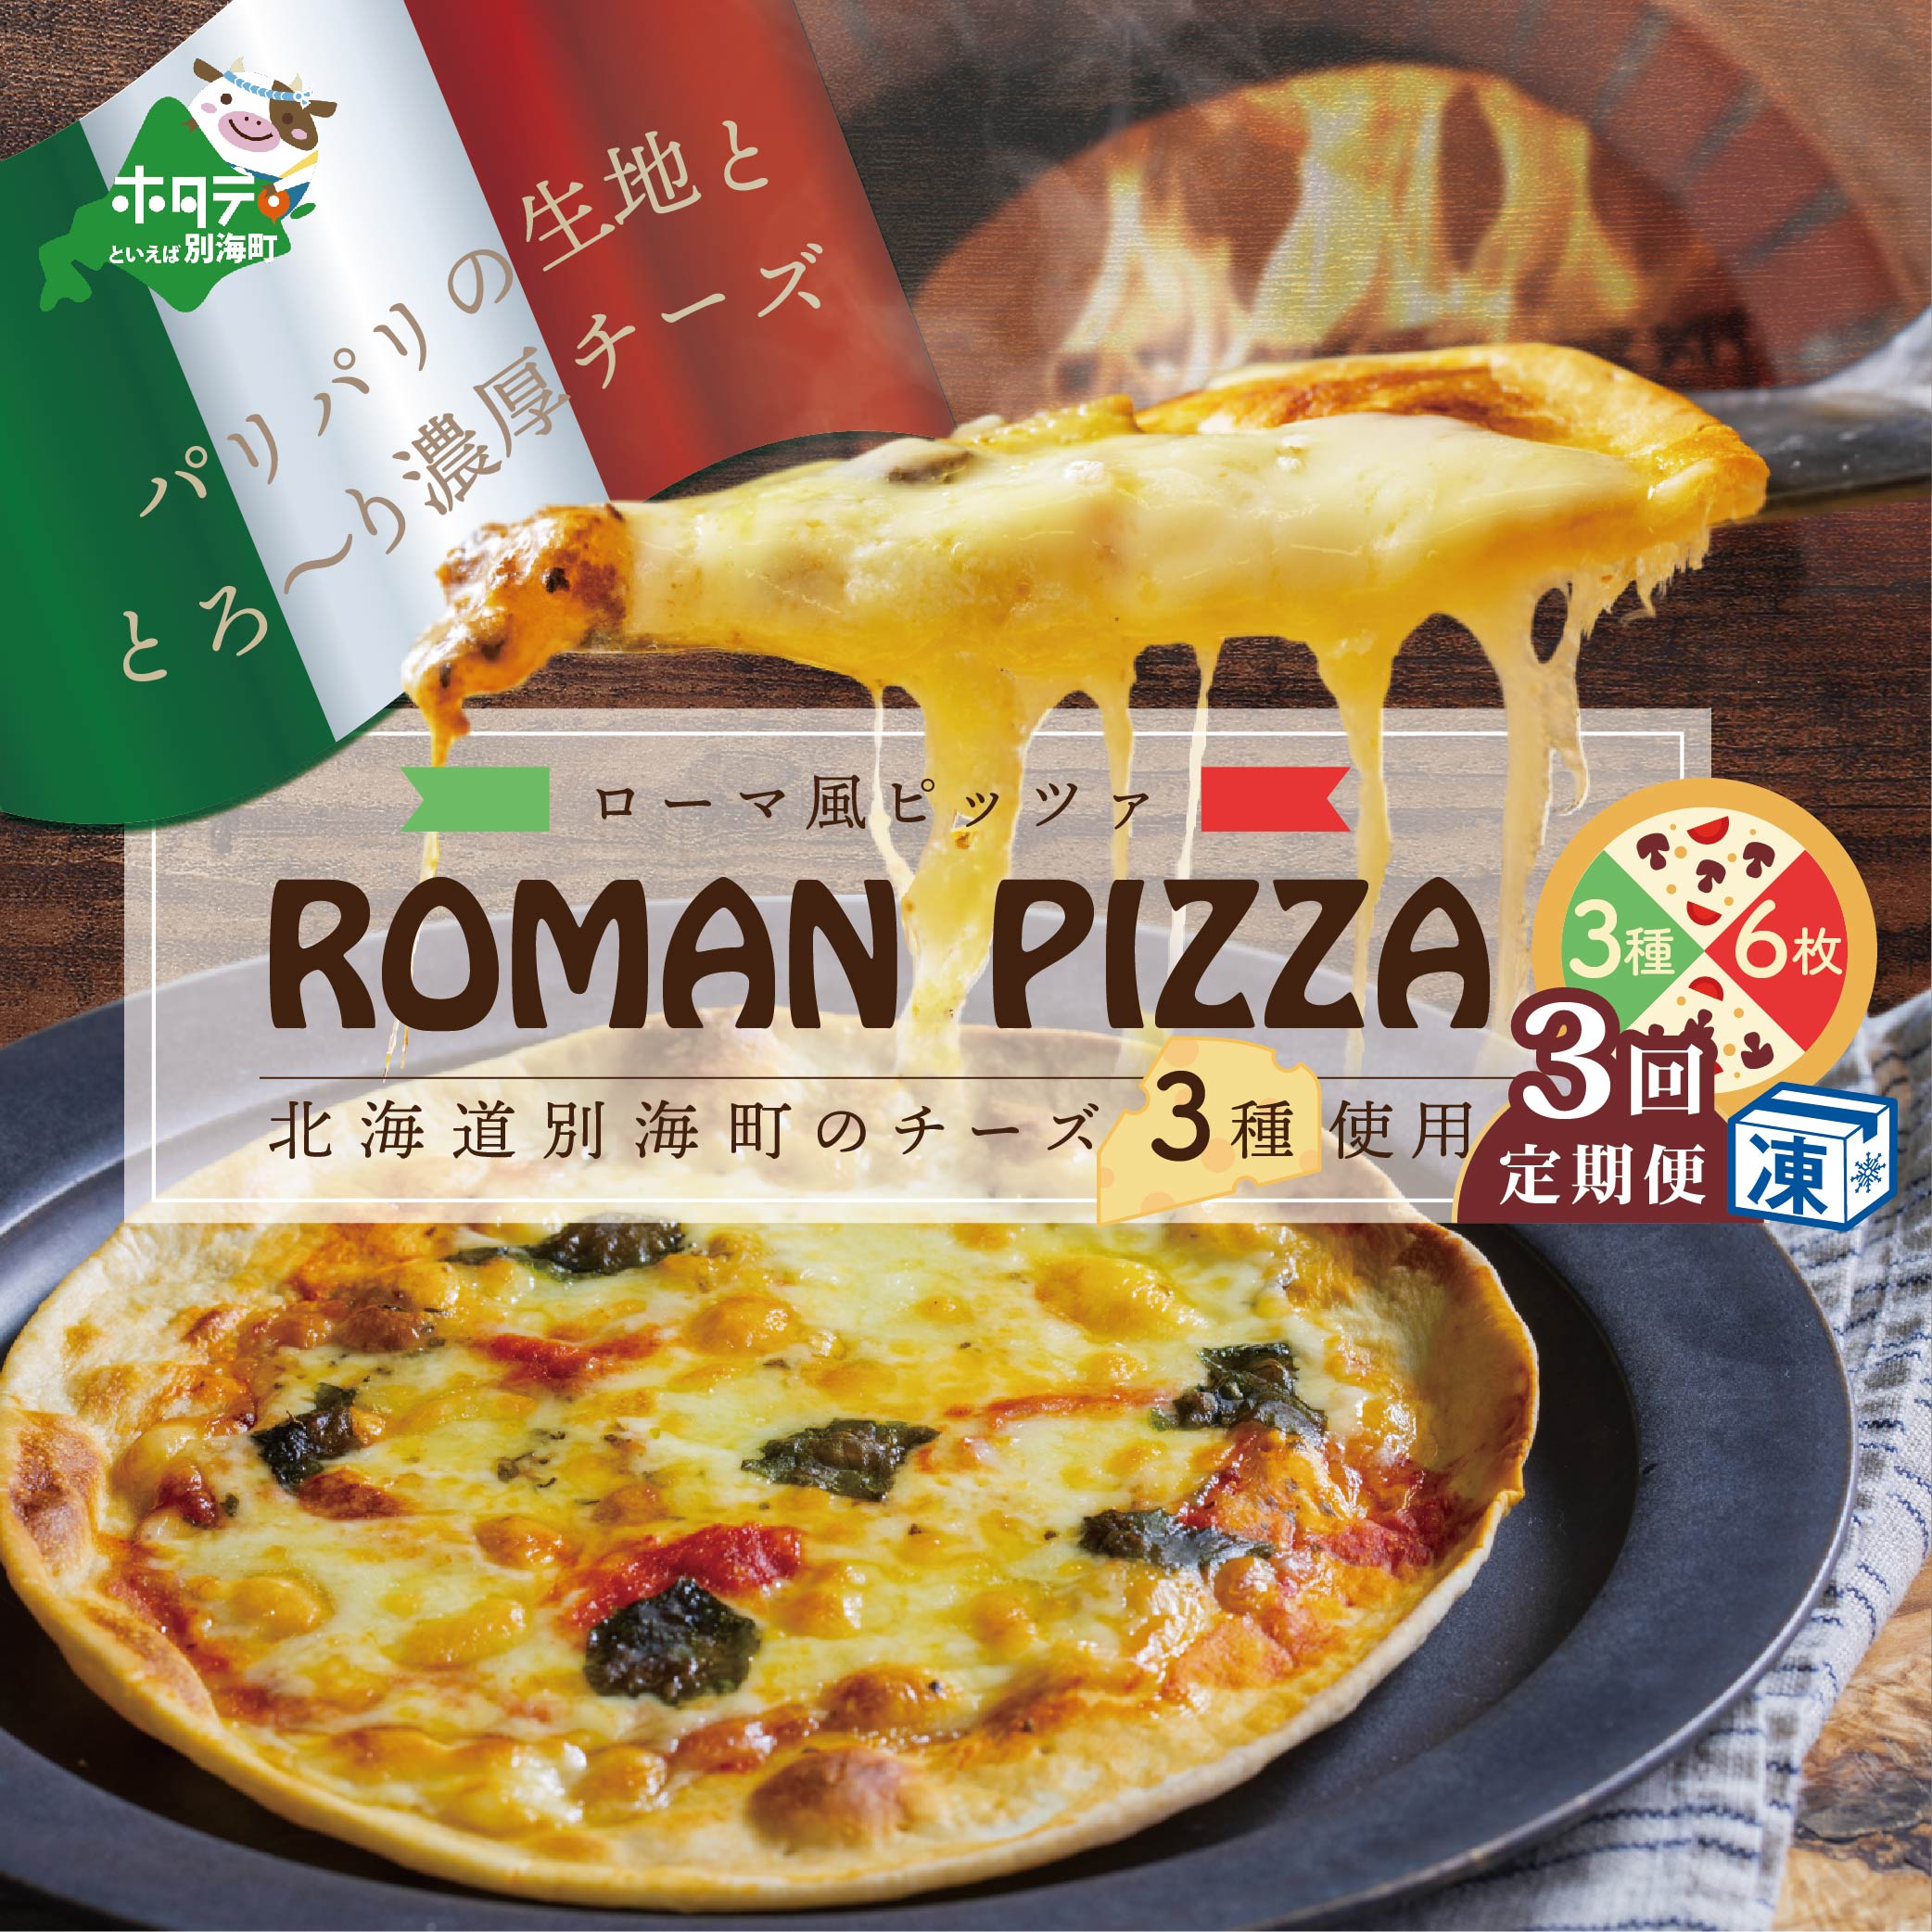 北海道別海町チーズを使ったピザ ６枚セット×３ヵ月(be059-0690-100-3)